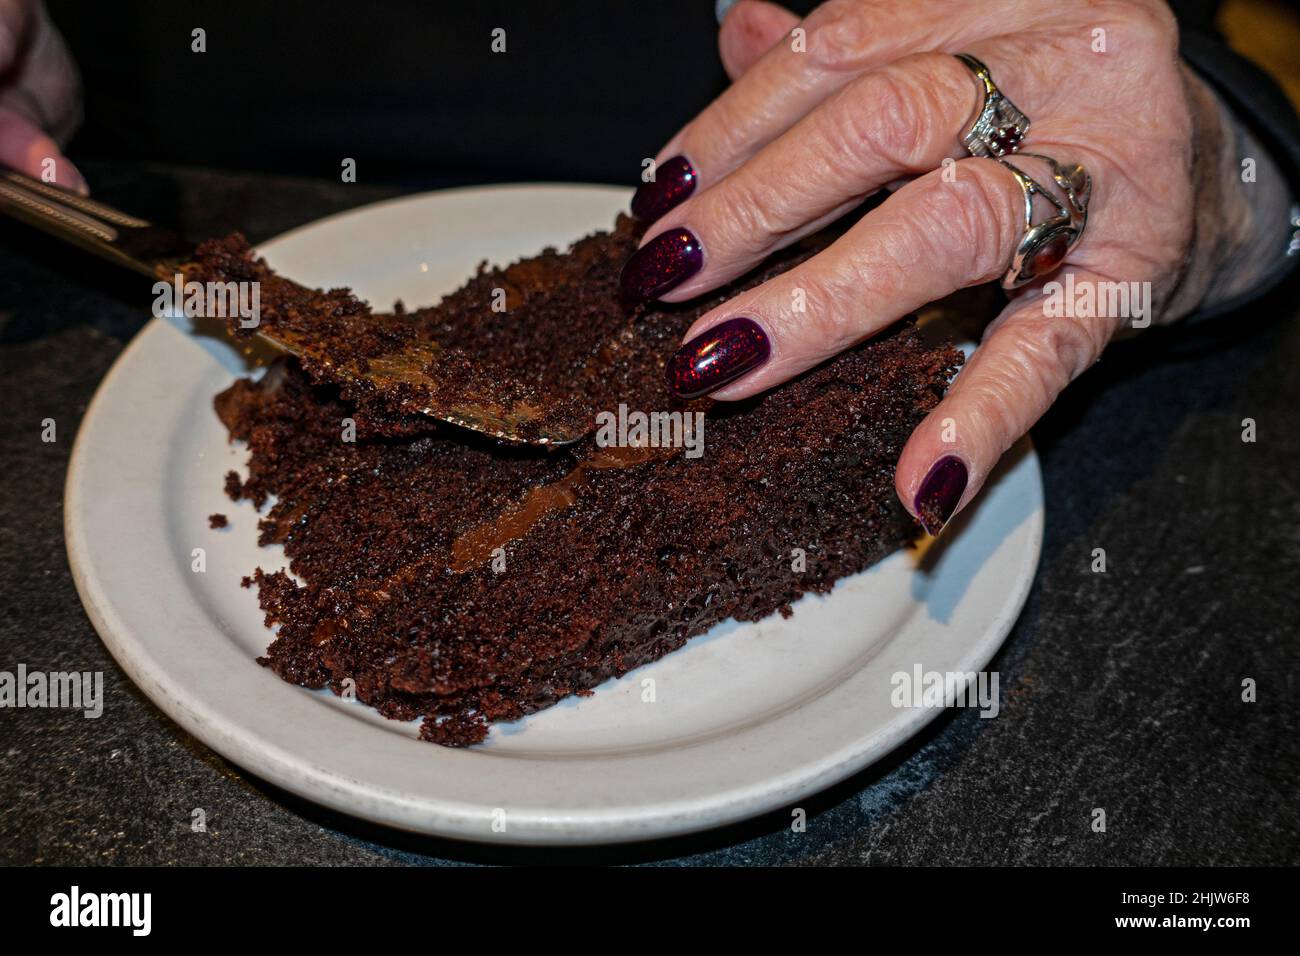 Dekadente Schokoladenkuchen, die im gehobenen Cafe Latte serviert werden und von einer Frau mit kastanienbraunen Nägeln mit roten Flecken geschnitten werden. St. Paul Minnesota, USA Stockfoto